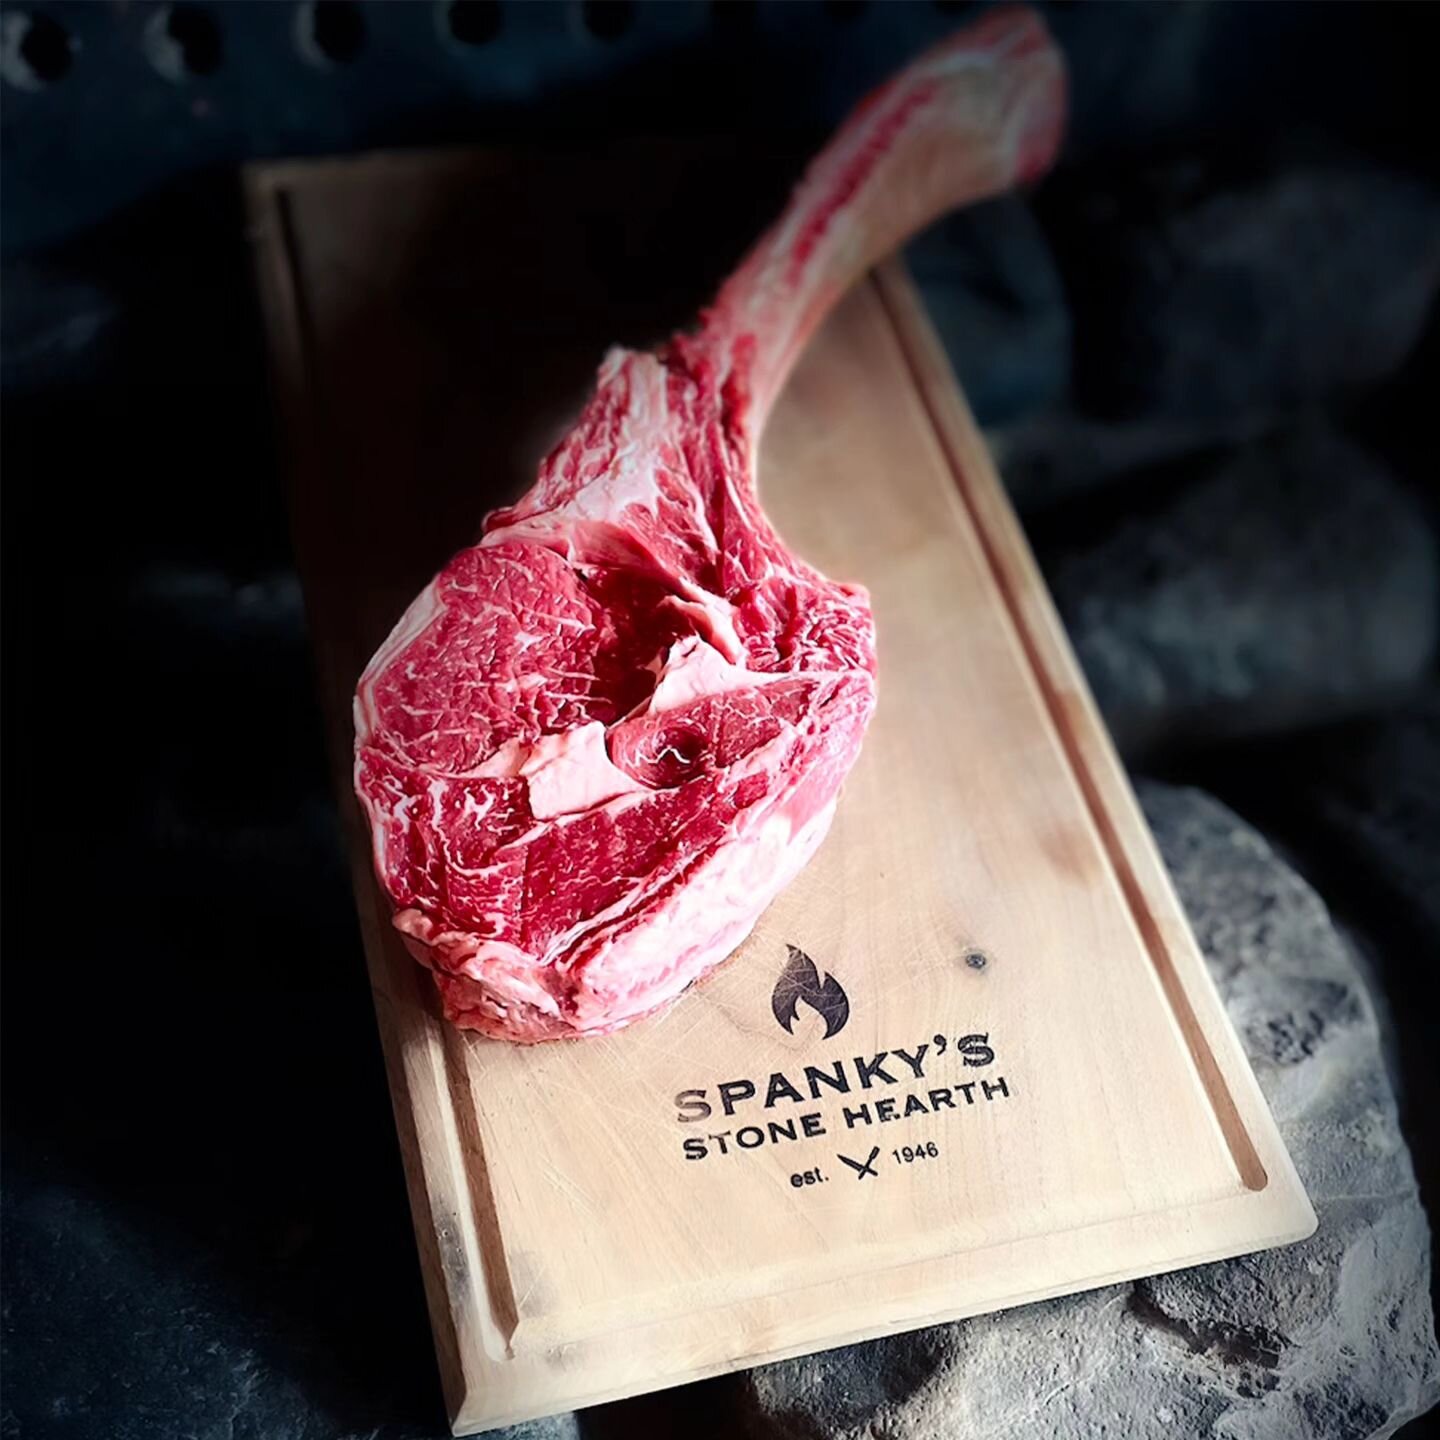 𝟒𝟖𝐨𝐳 𝐓𝐨𝐦𝐚𝐡𝐚𝐰𝐤 𝐒𝐭𝐞𝐚𝐤

#tomahawksteak #spankysstonehearth
#meatlover